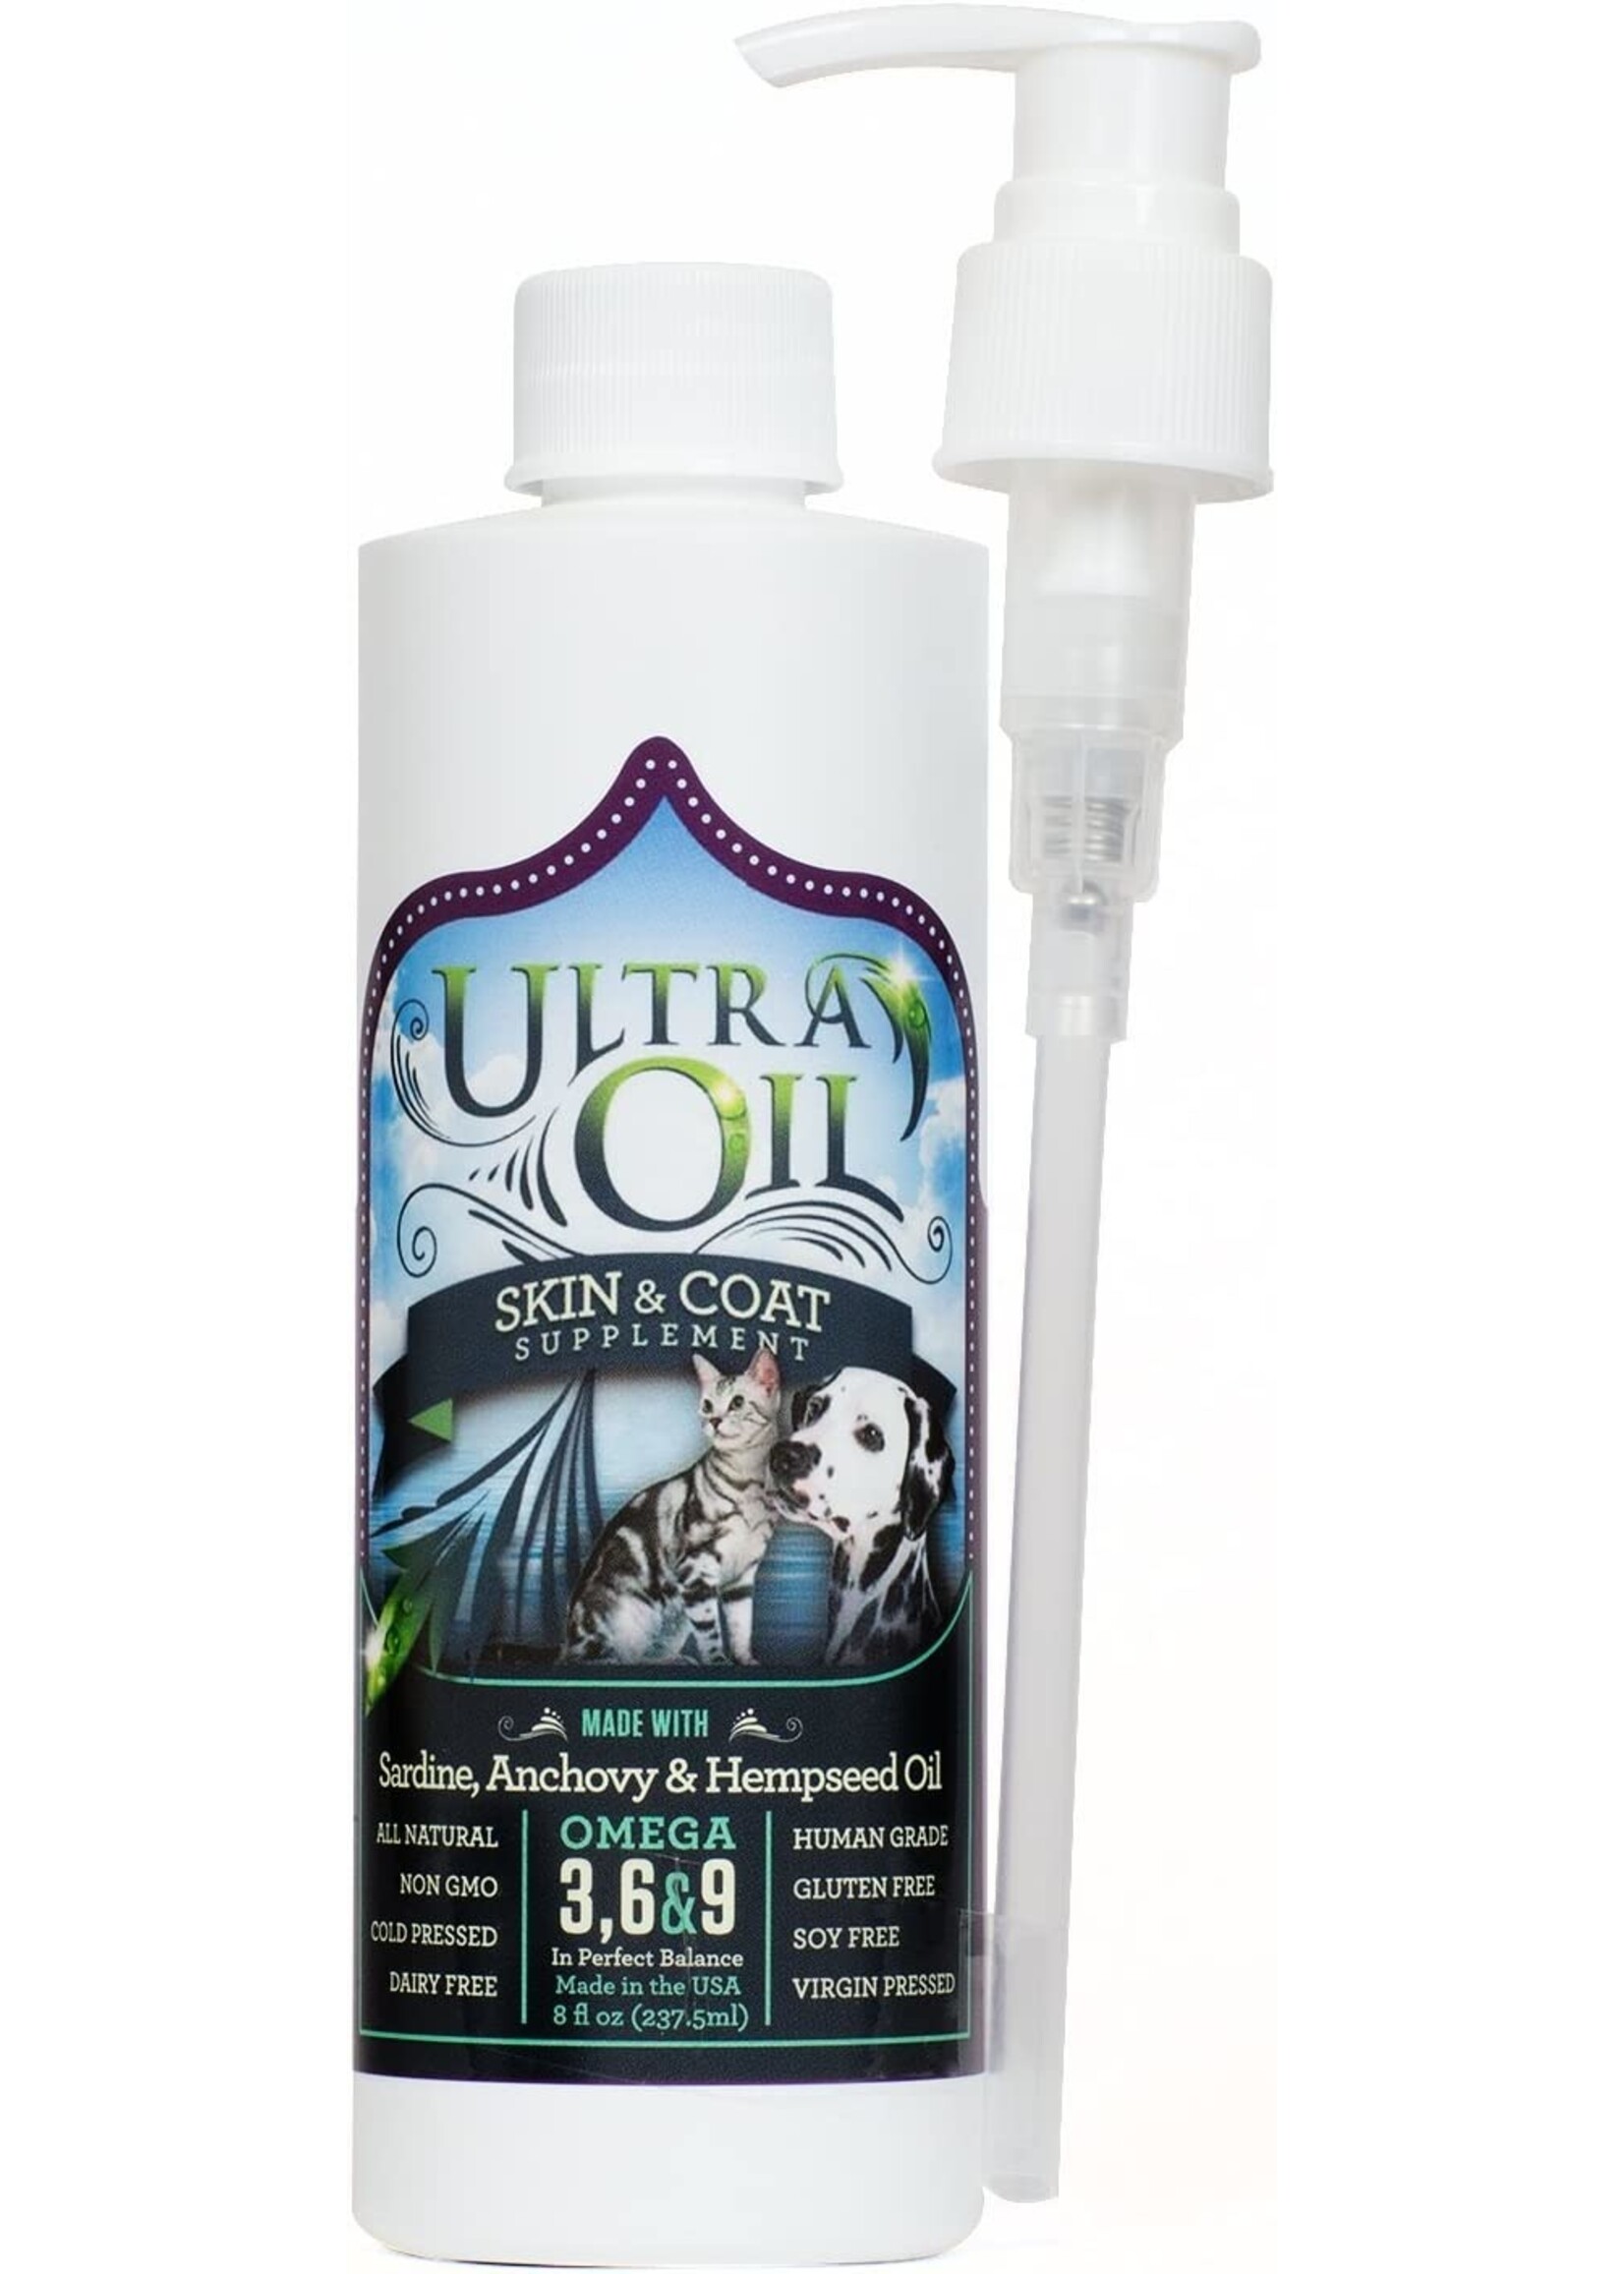 Ultra Oil Ultra Oil Skin & Coat Supplement